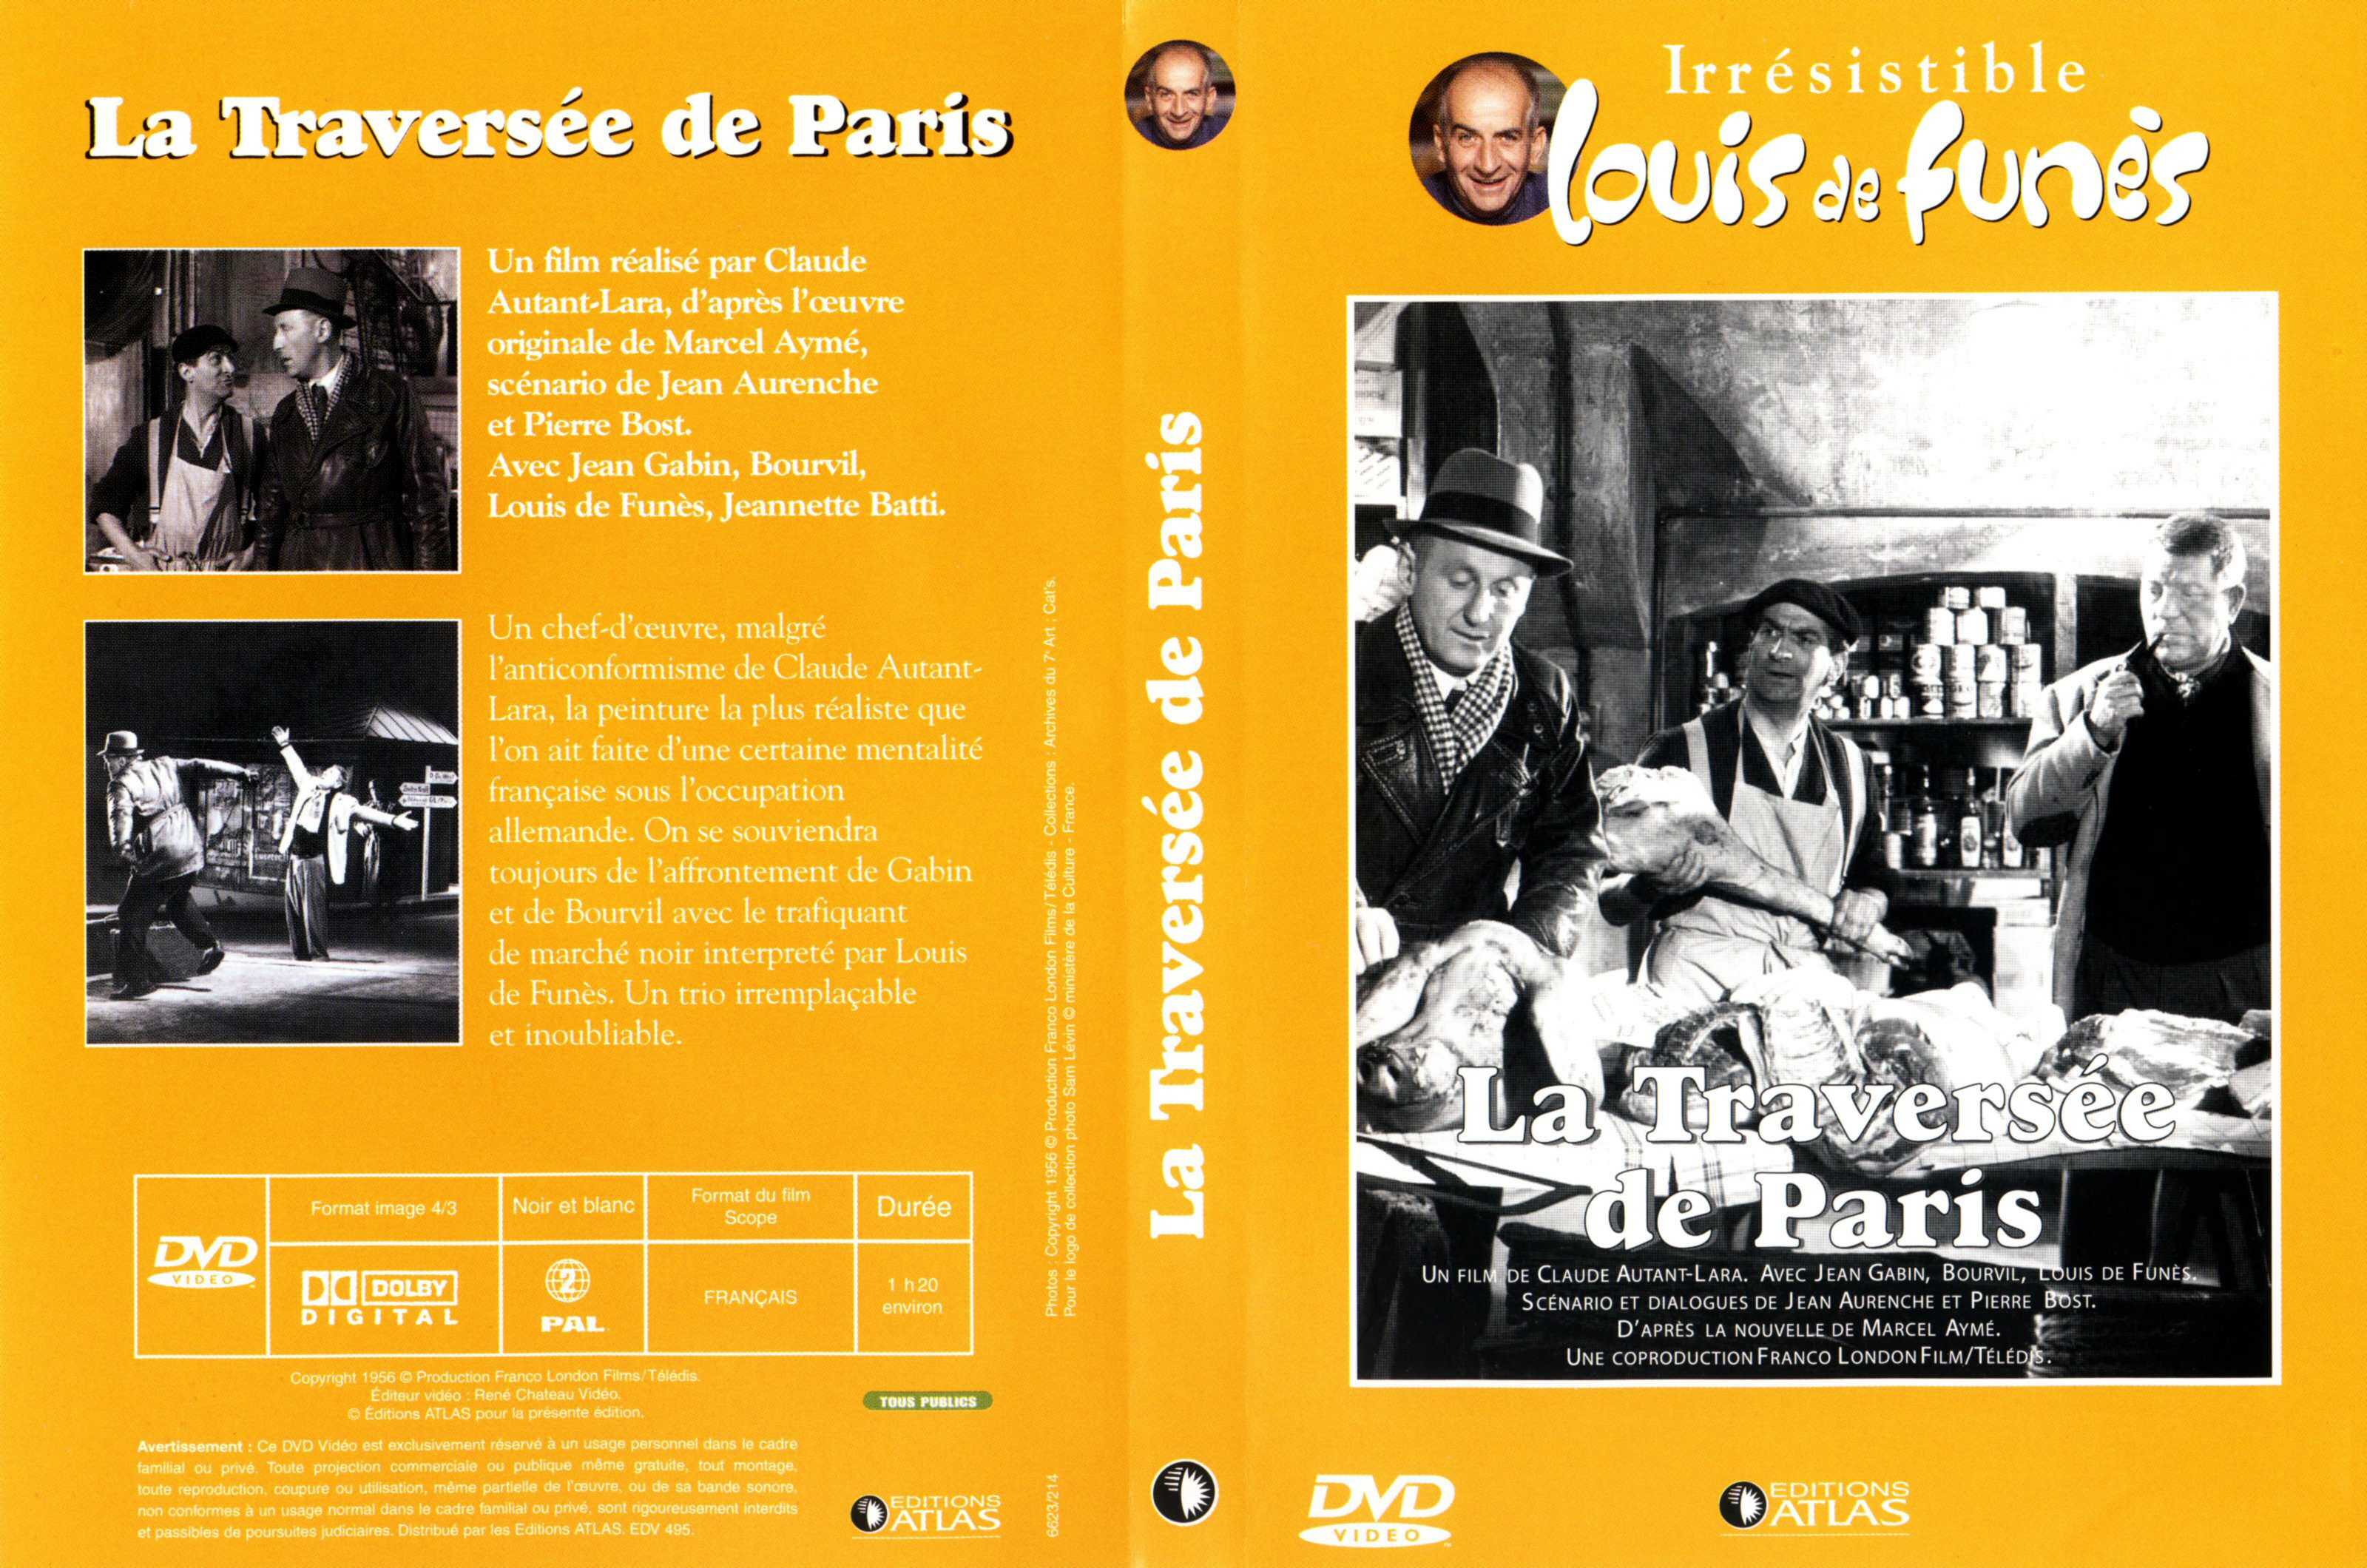 Jaquette DVD La traverse de Paris v2